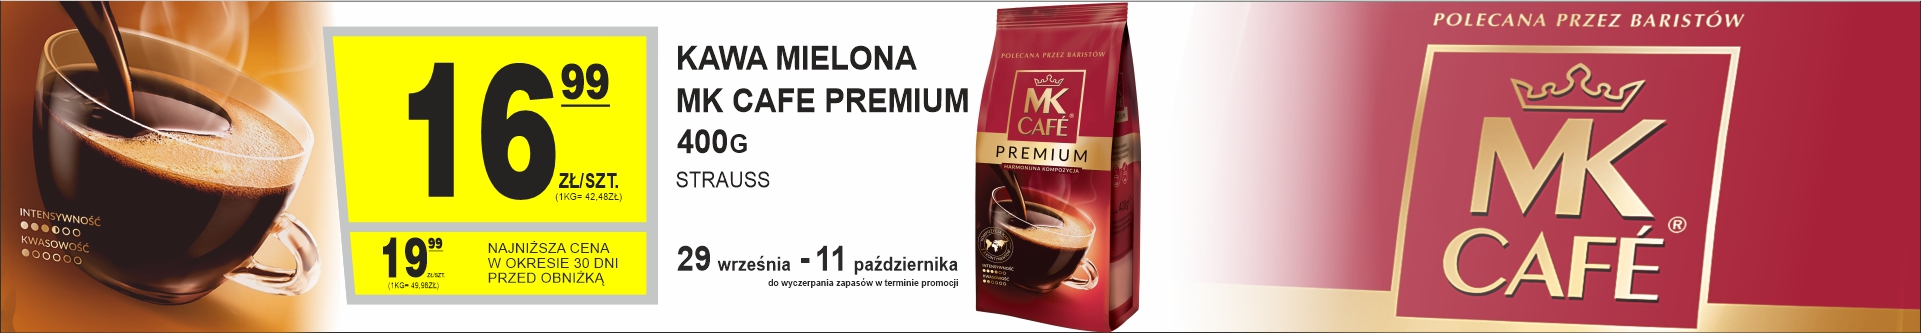 Sklepy Społem - KAWA MIELONA MK CAFE PREMIUM 400G